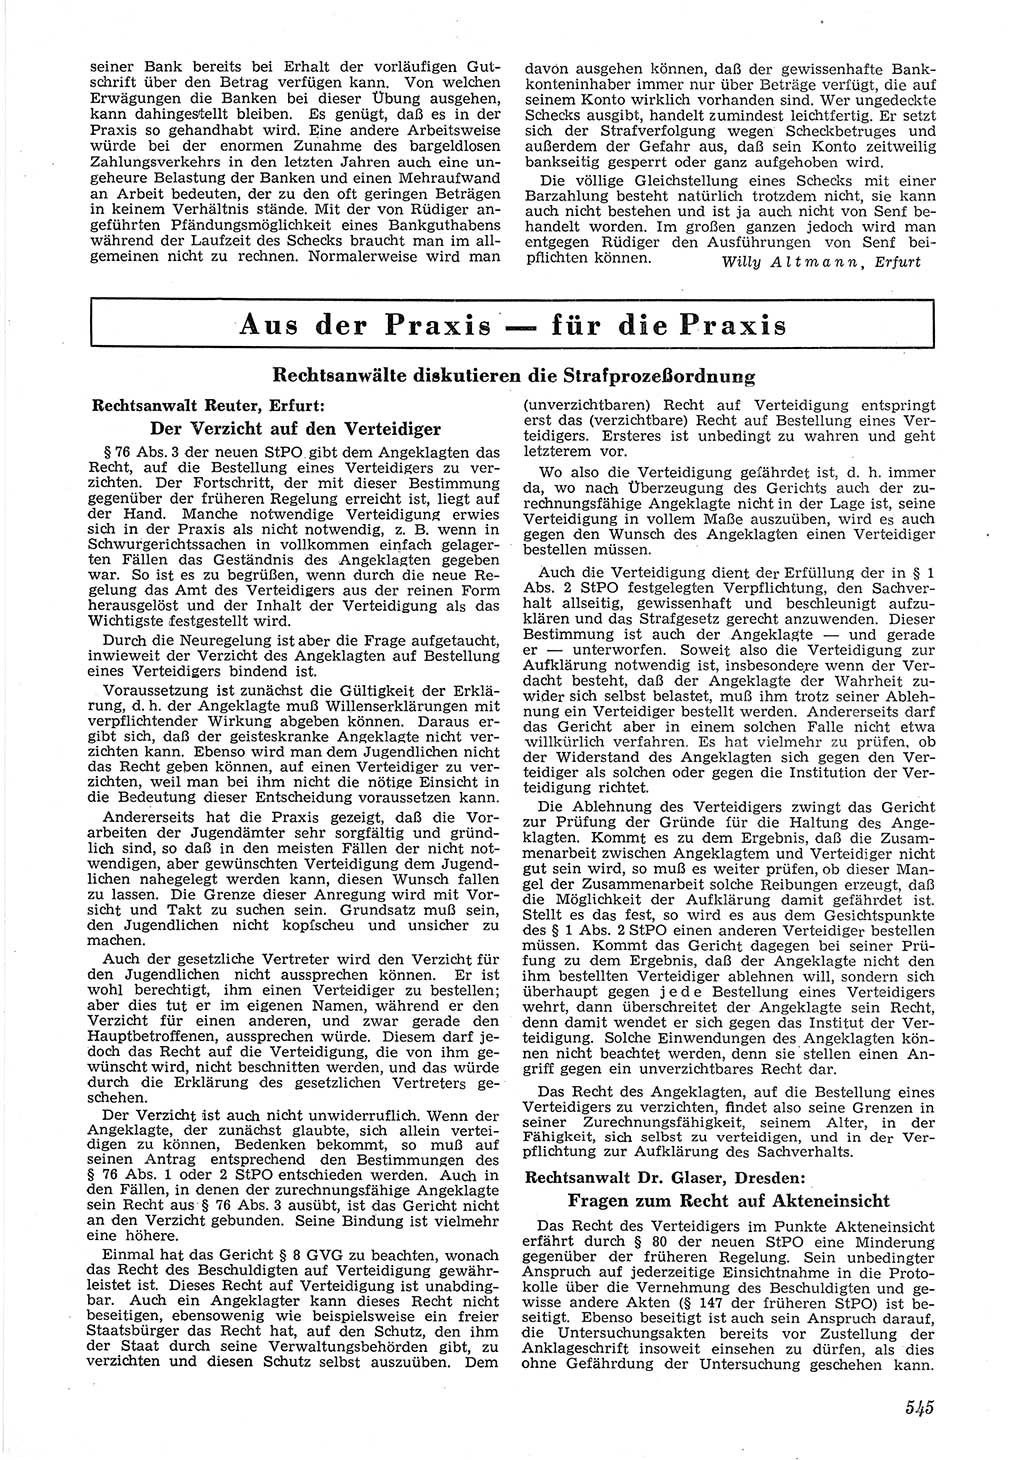 Neue Justiz (NJ), Zeitschrift für Recht und Rechtswissenschaft [Deutsche Demokratische Republik (DDR)], 6. Jahrgang 1952, Seite 545 (NJ DDR 1952, S. 545)